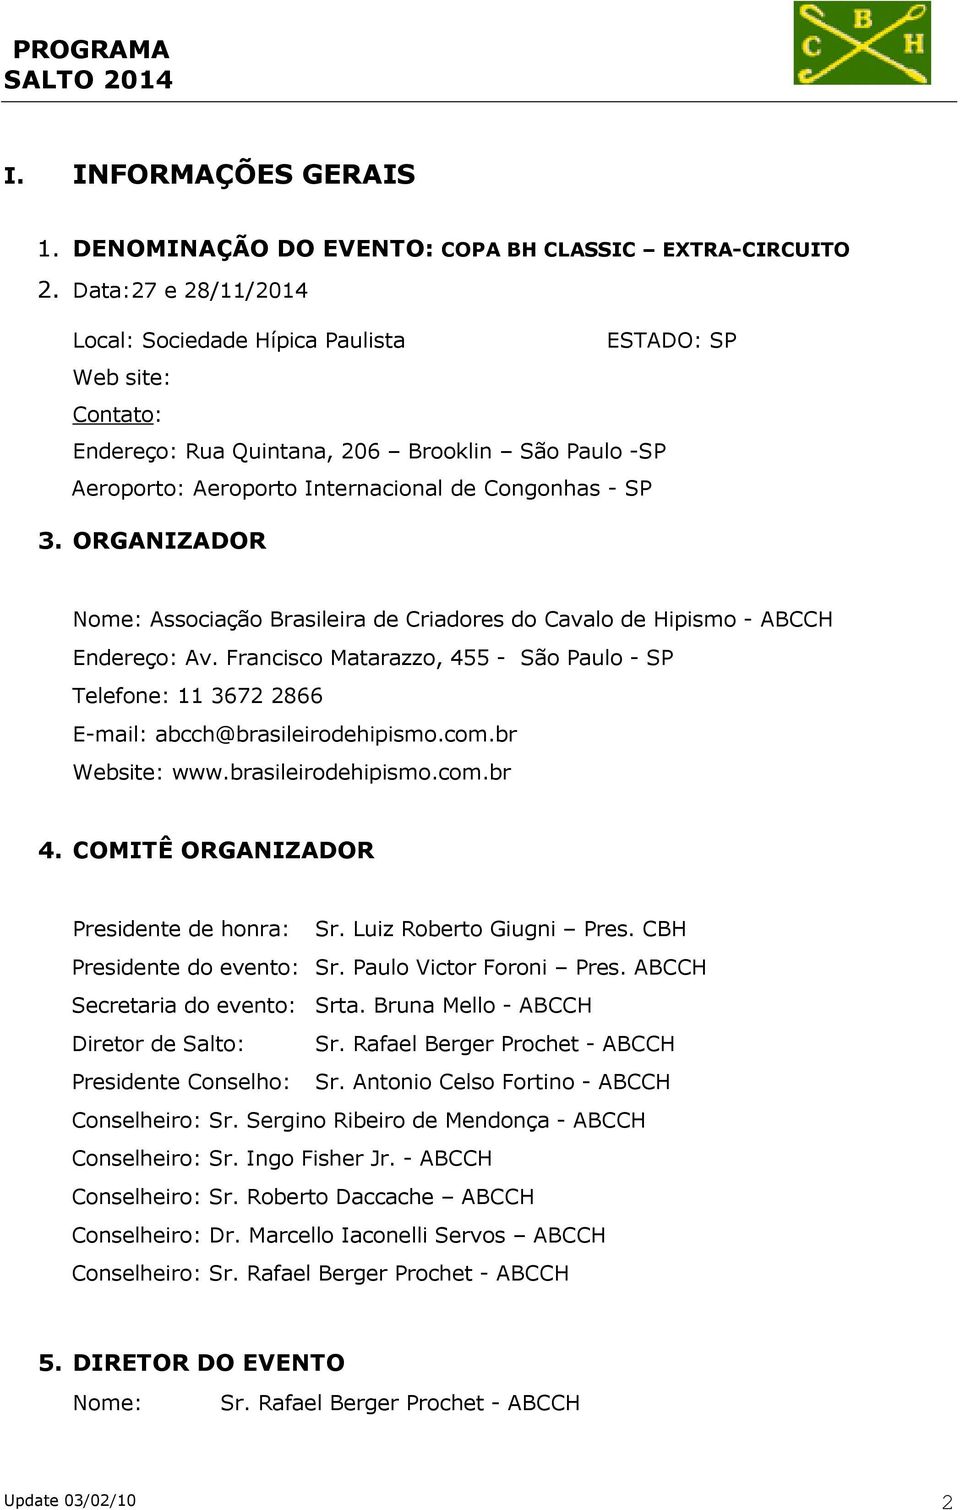 ORGANIZADOR Nome: Associação Brasileira de Criadores do Cavalo de Hipismo - ABCCH Endereço: Av. Francisco Matarazzo, 455 - São Paulo - SP Telefone: 11 3672 2866 E-mail: abcch@brasileirodehipismo.com.